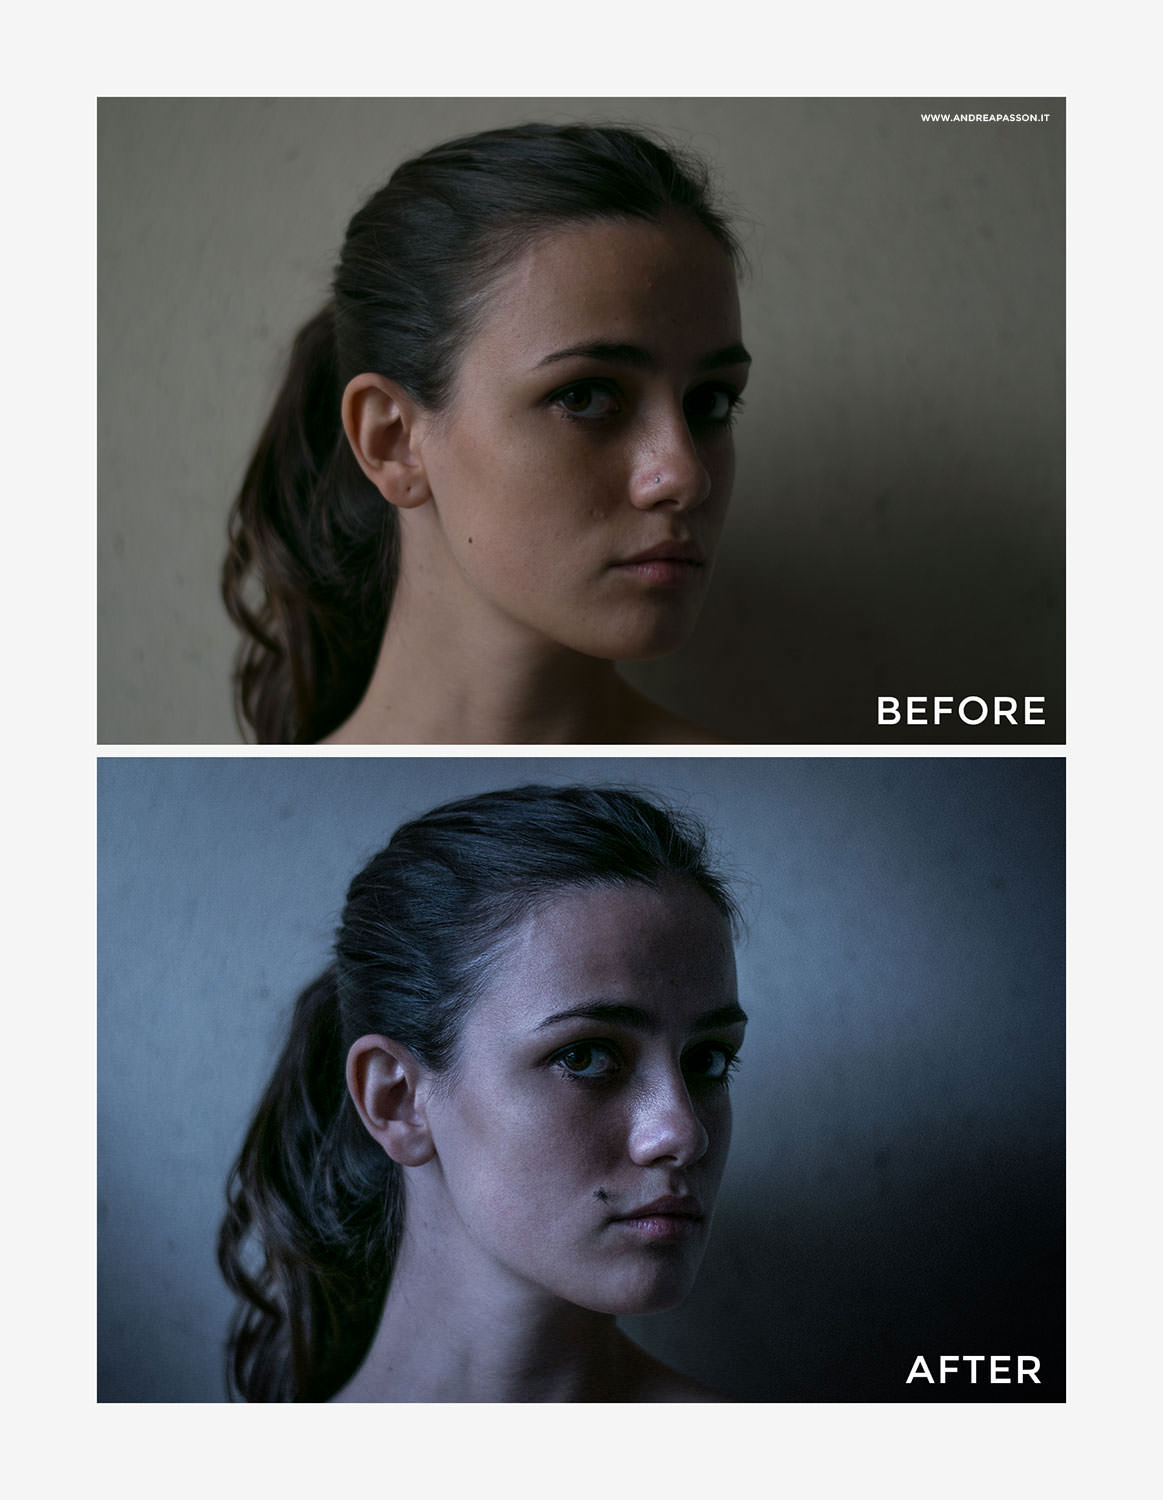 Before & After - Post Produzione Fotografica Professionale a Treviso - Ritratto Fine Art e Modella